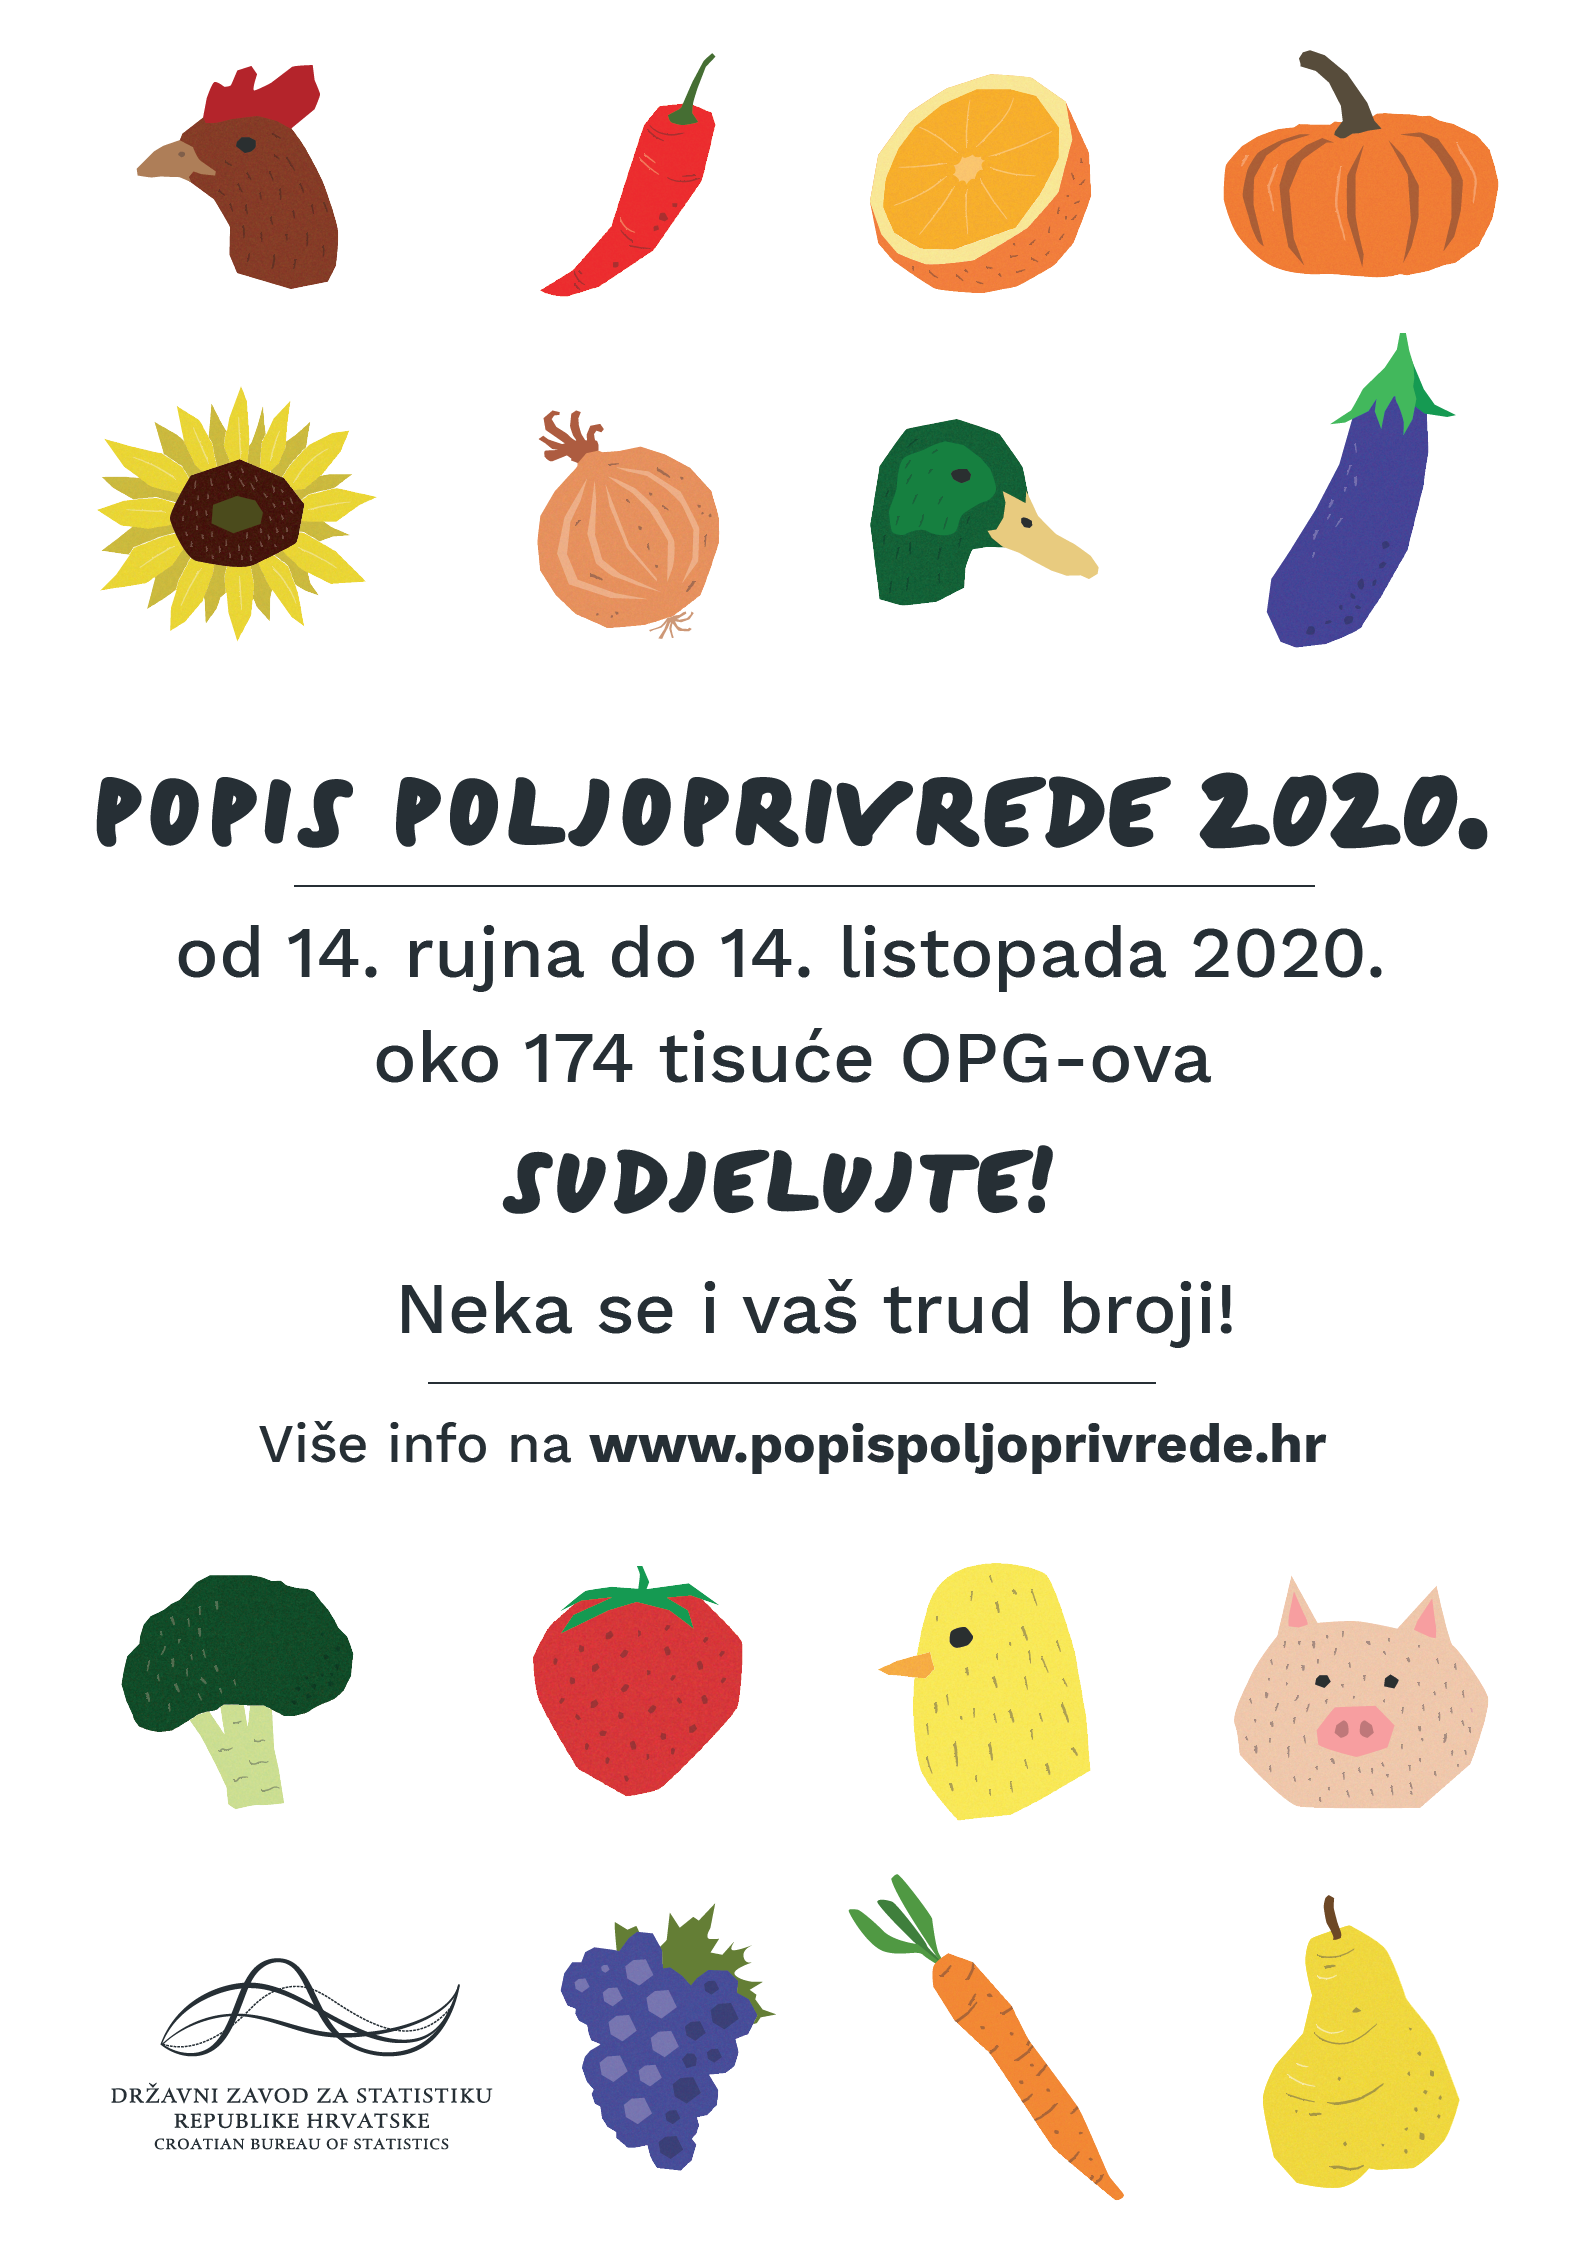 Plakat popis poljoprivrede